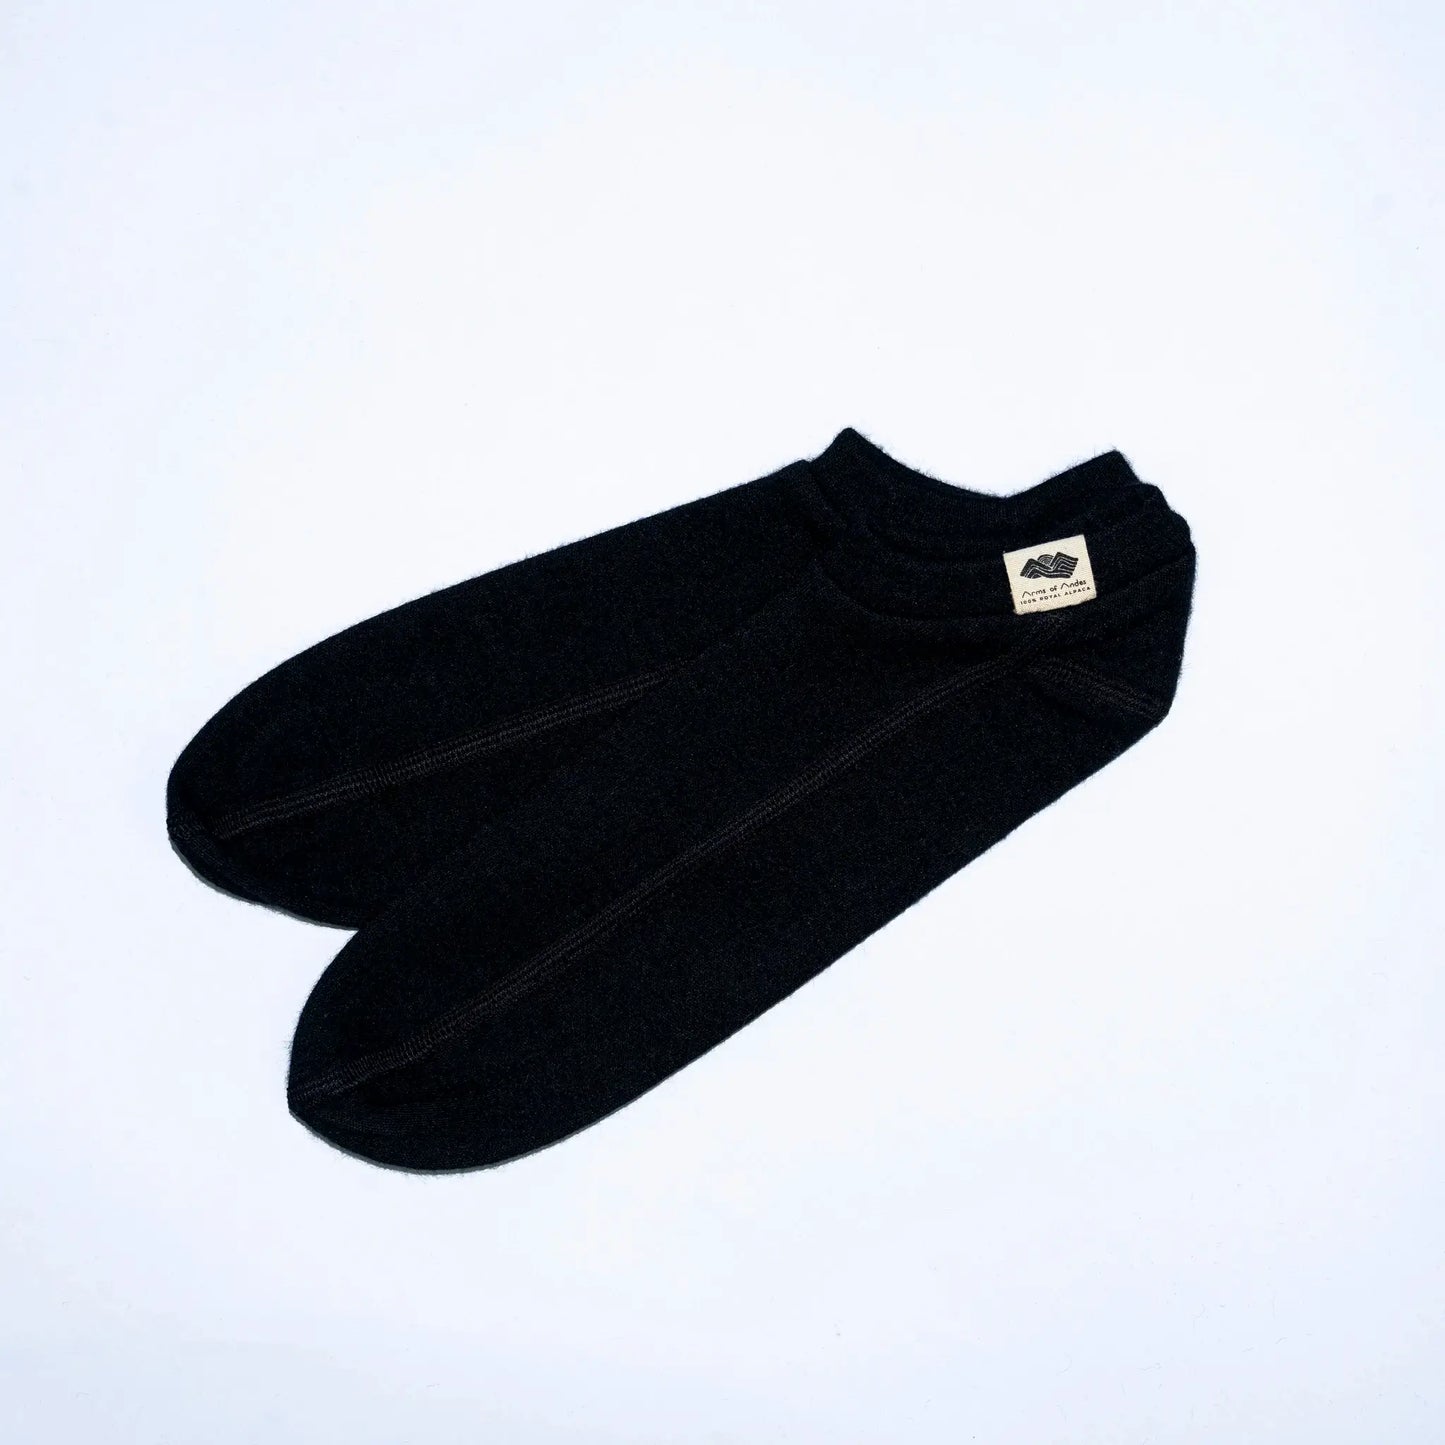 unisex slipper socks fast drying color gray